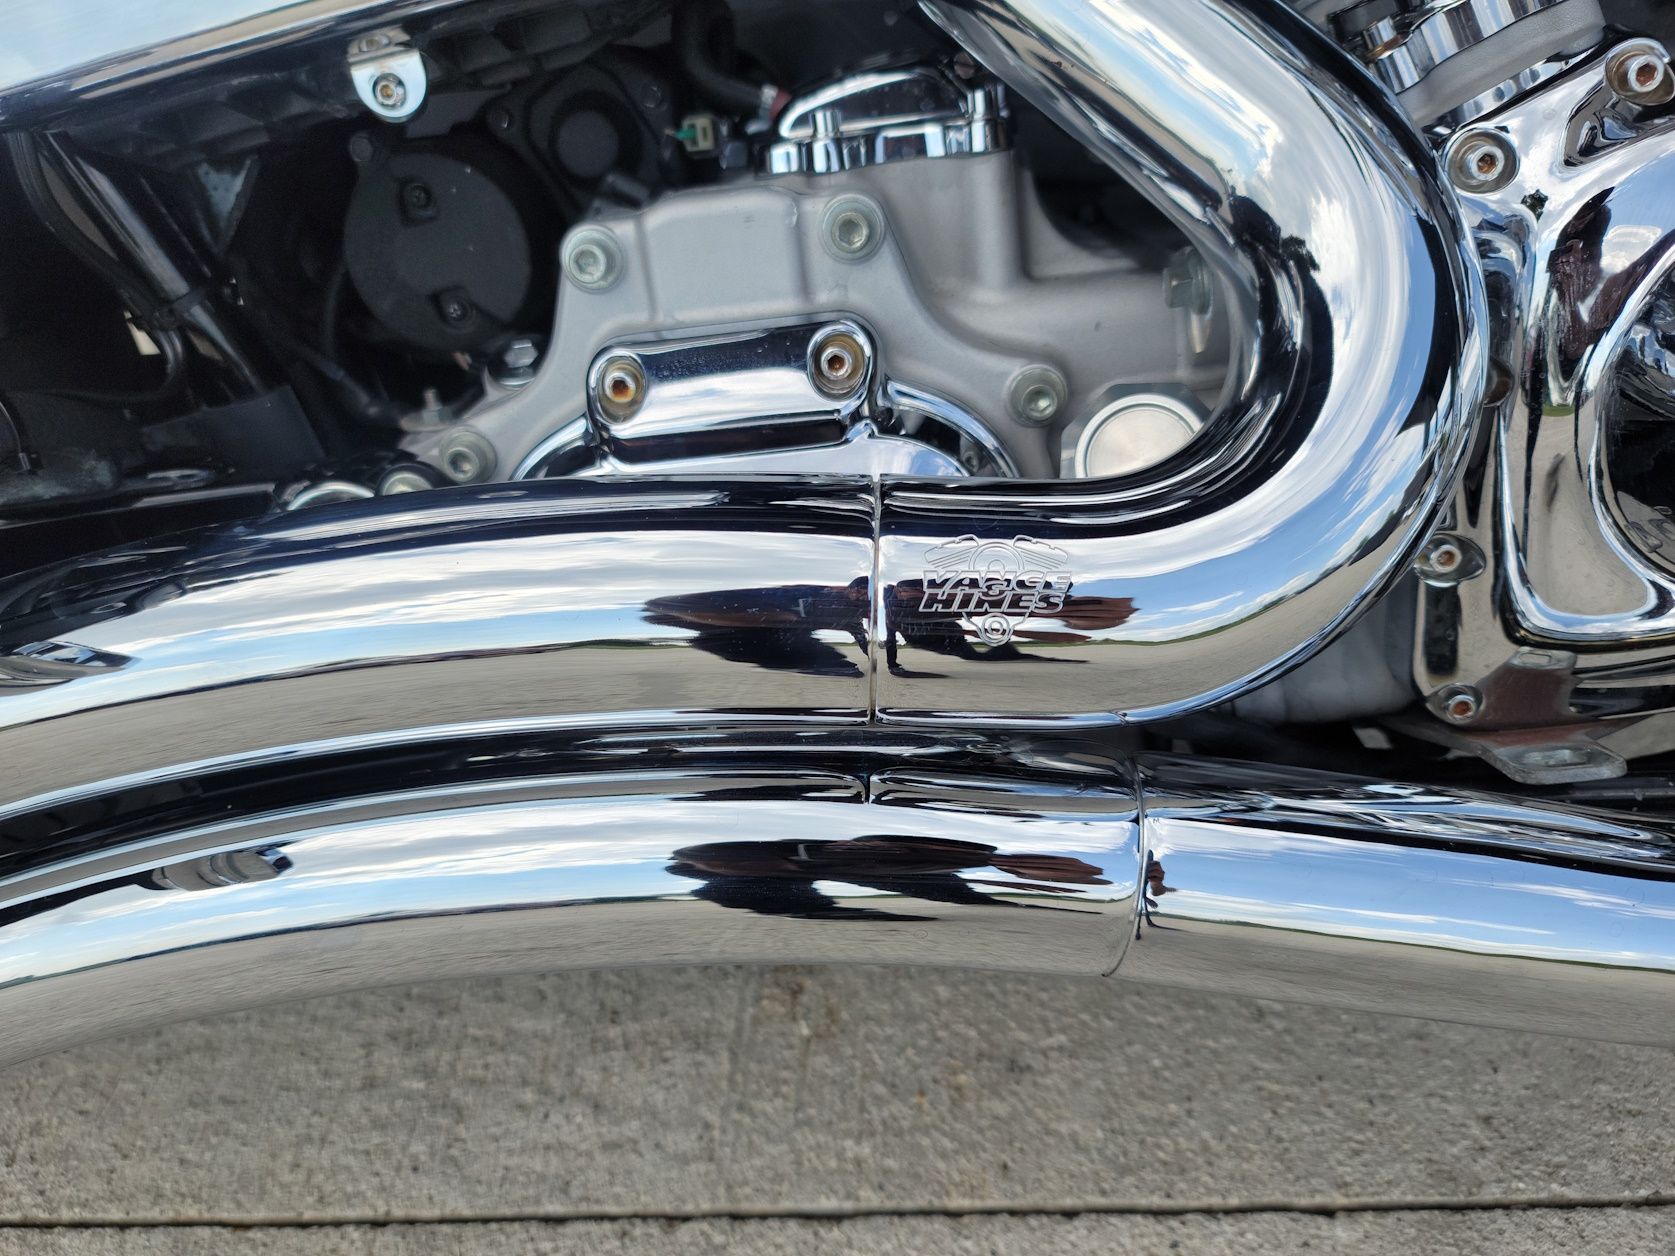 2007 Harley-Davidson Dyna® Super Glide® in Kenosha, Wisconsin - Photo 10